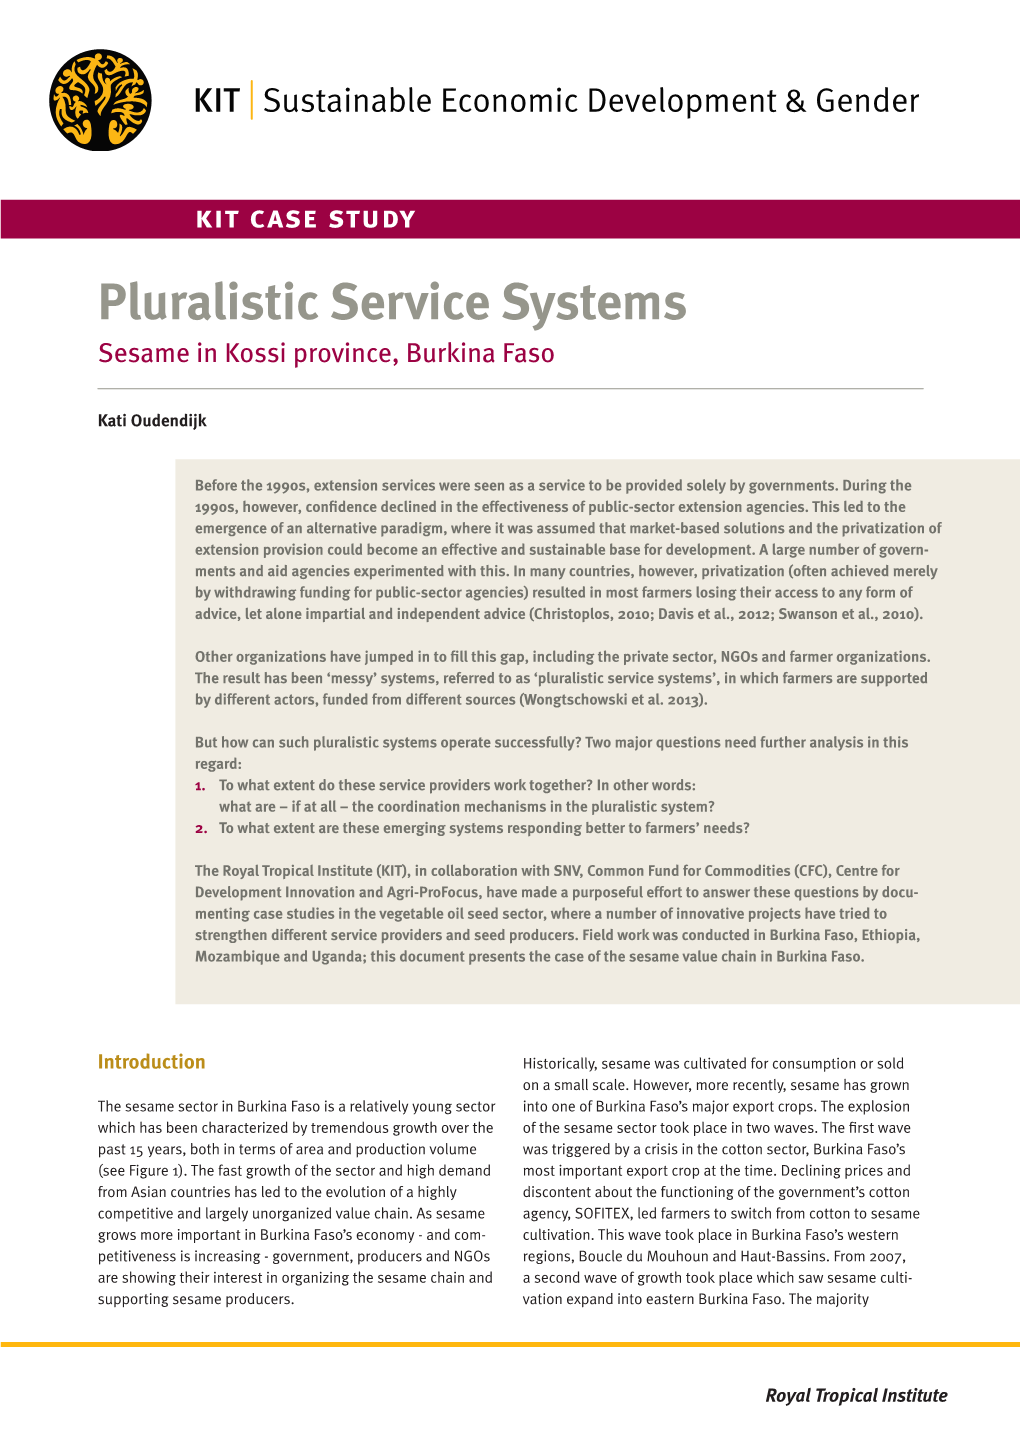 Pluralistic Service Systems – Sesame in Kossi Province, Burkina Faso